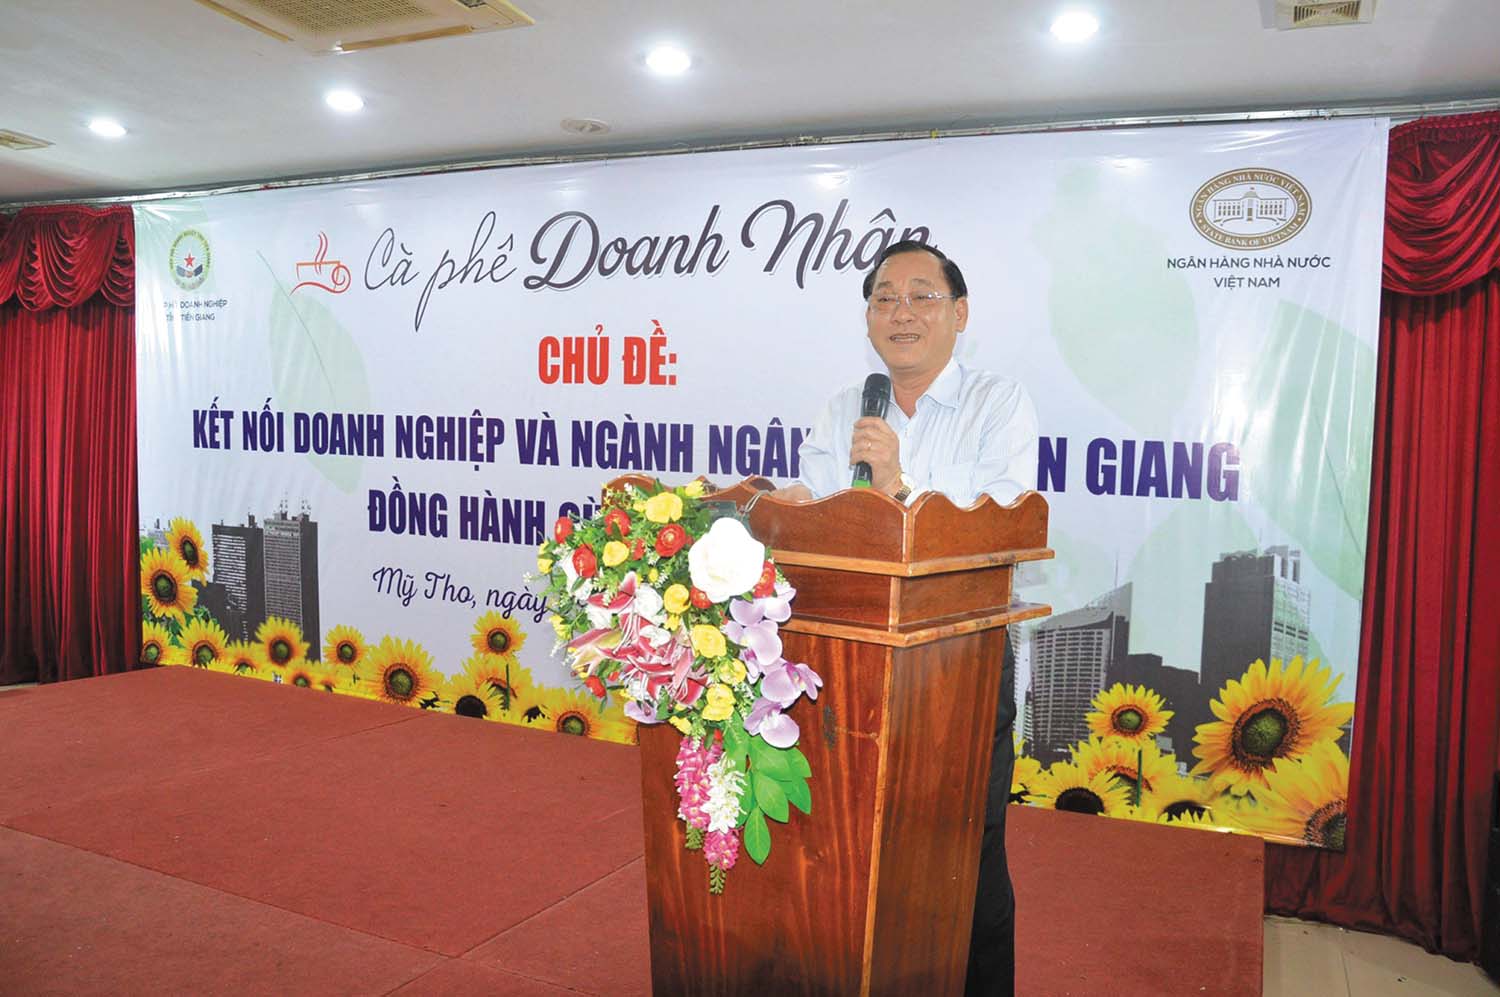 Ông Nguyễn Văn Vĩnh, Chủ tịch UBND tỉnh Tiền Giang chia sẻ thông tin với doanh nghiệp tại cuộc gặp gỡ Cà phê doanh nhân